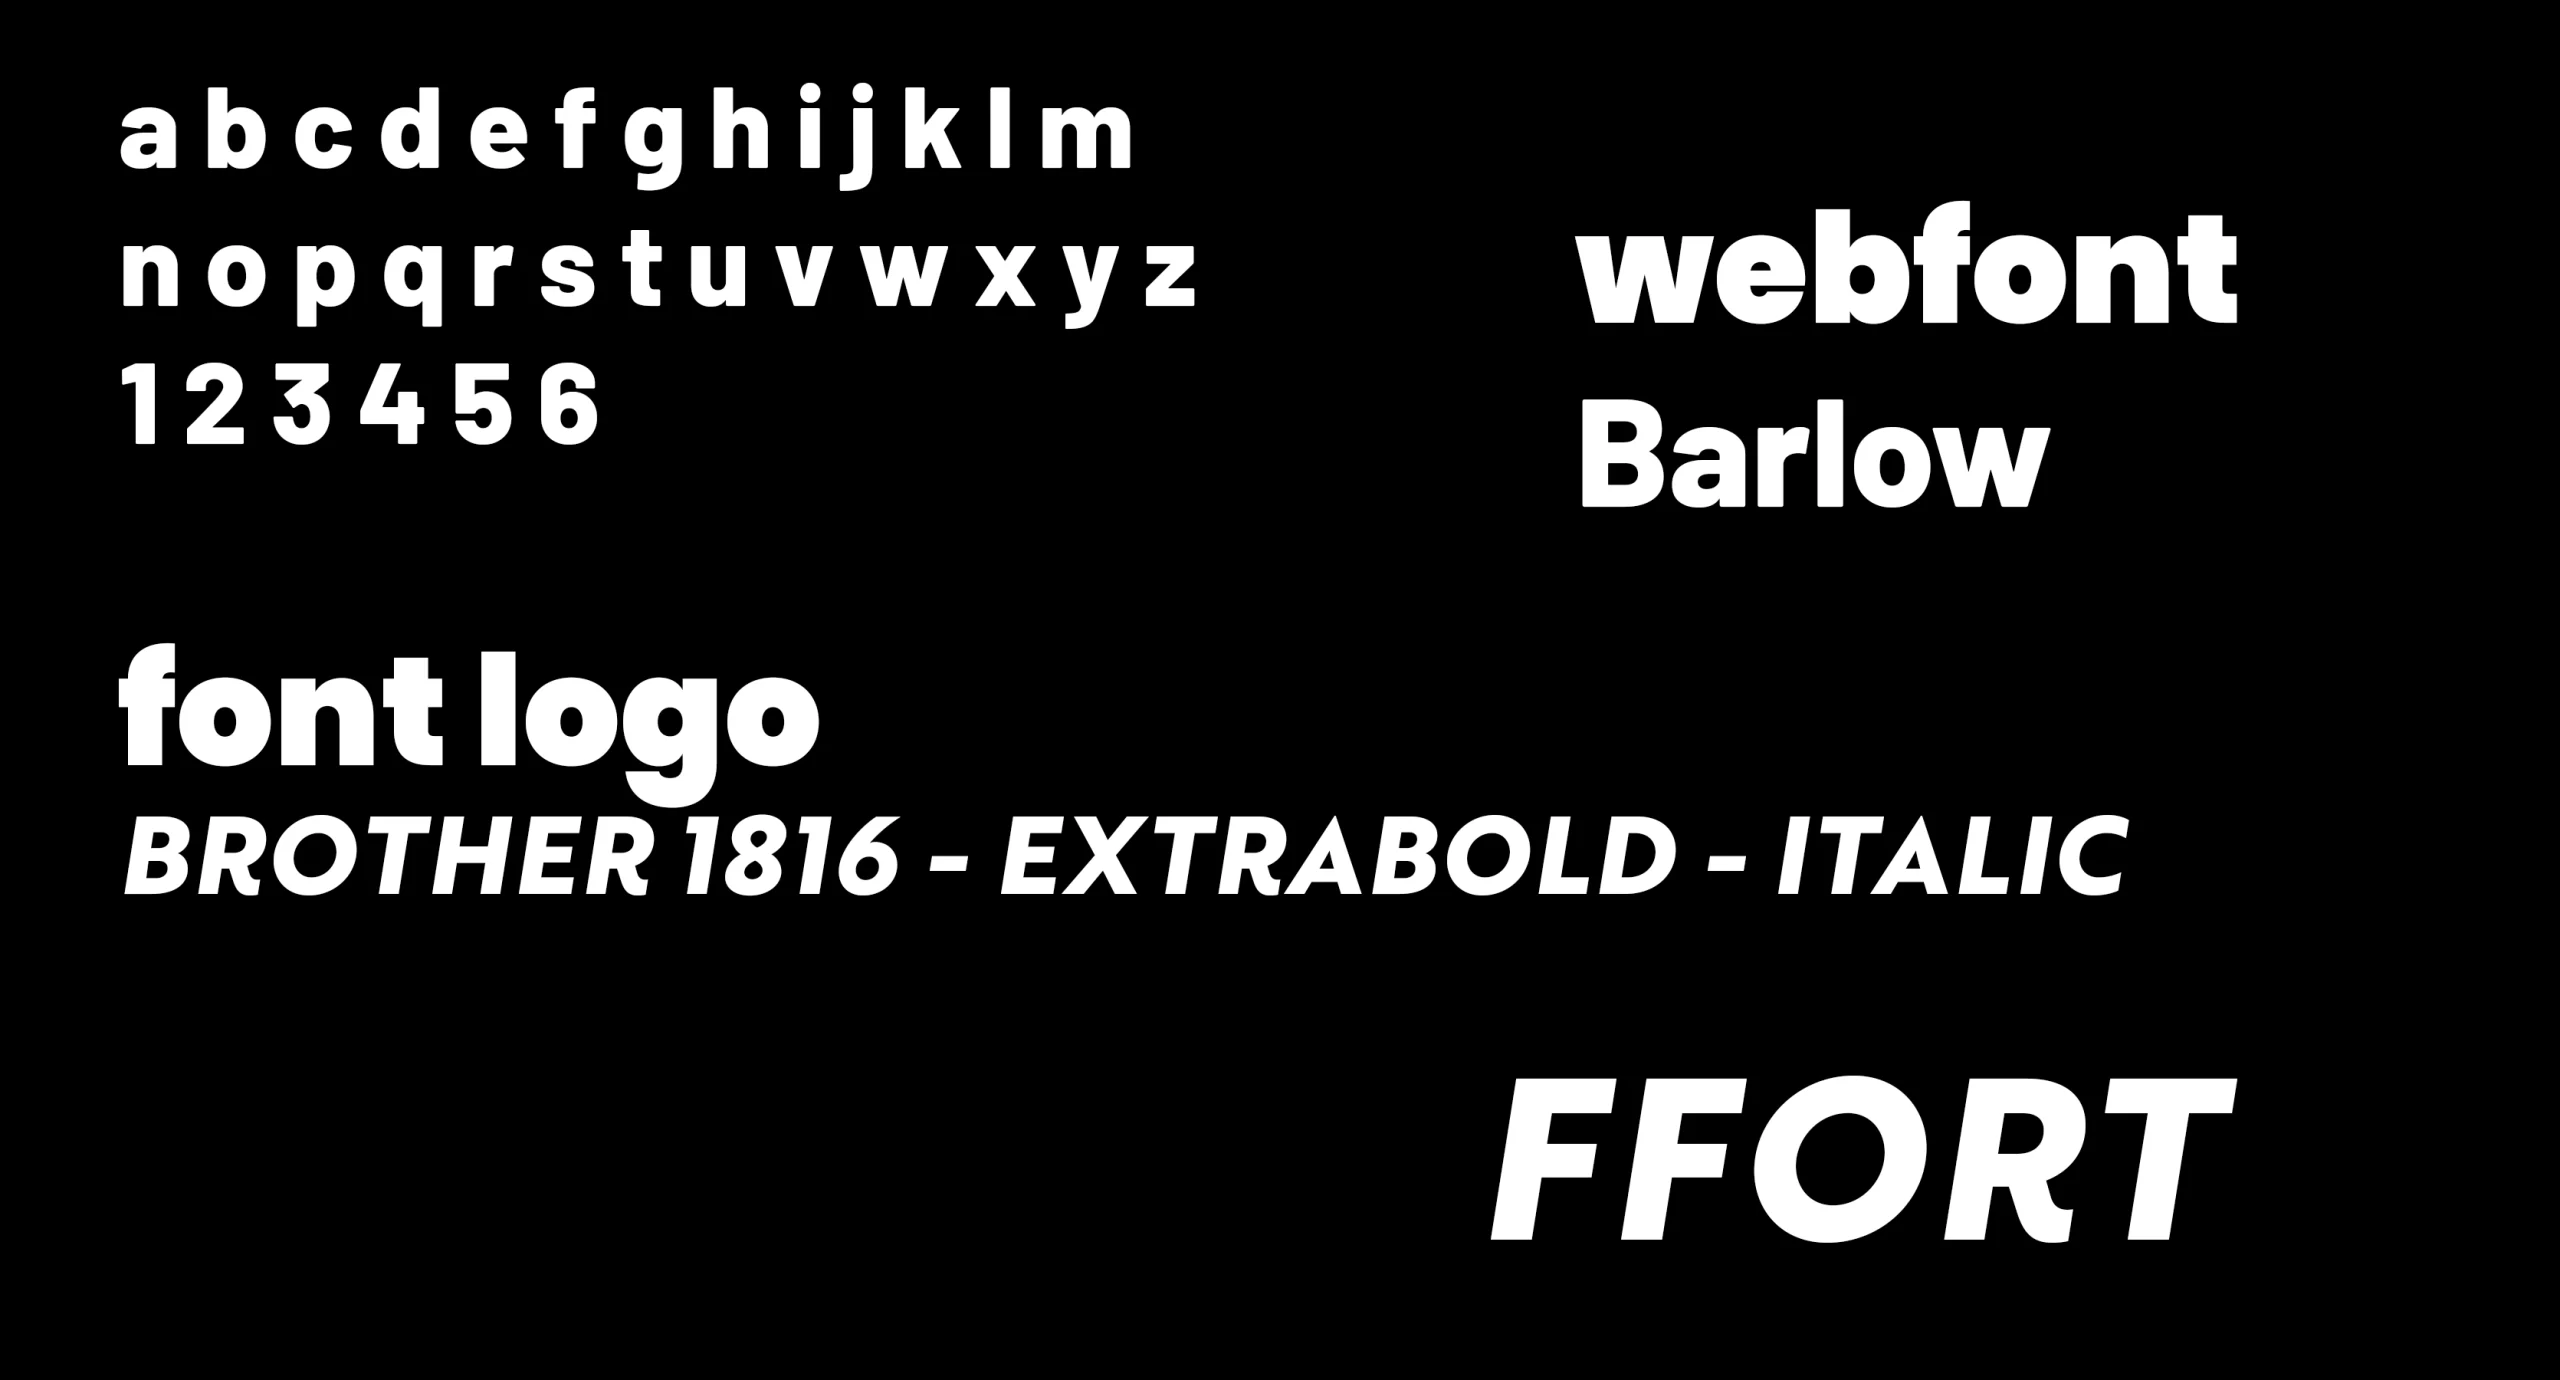 Full Branding - gekozen lettertype ffort